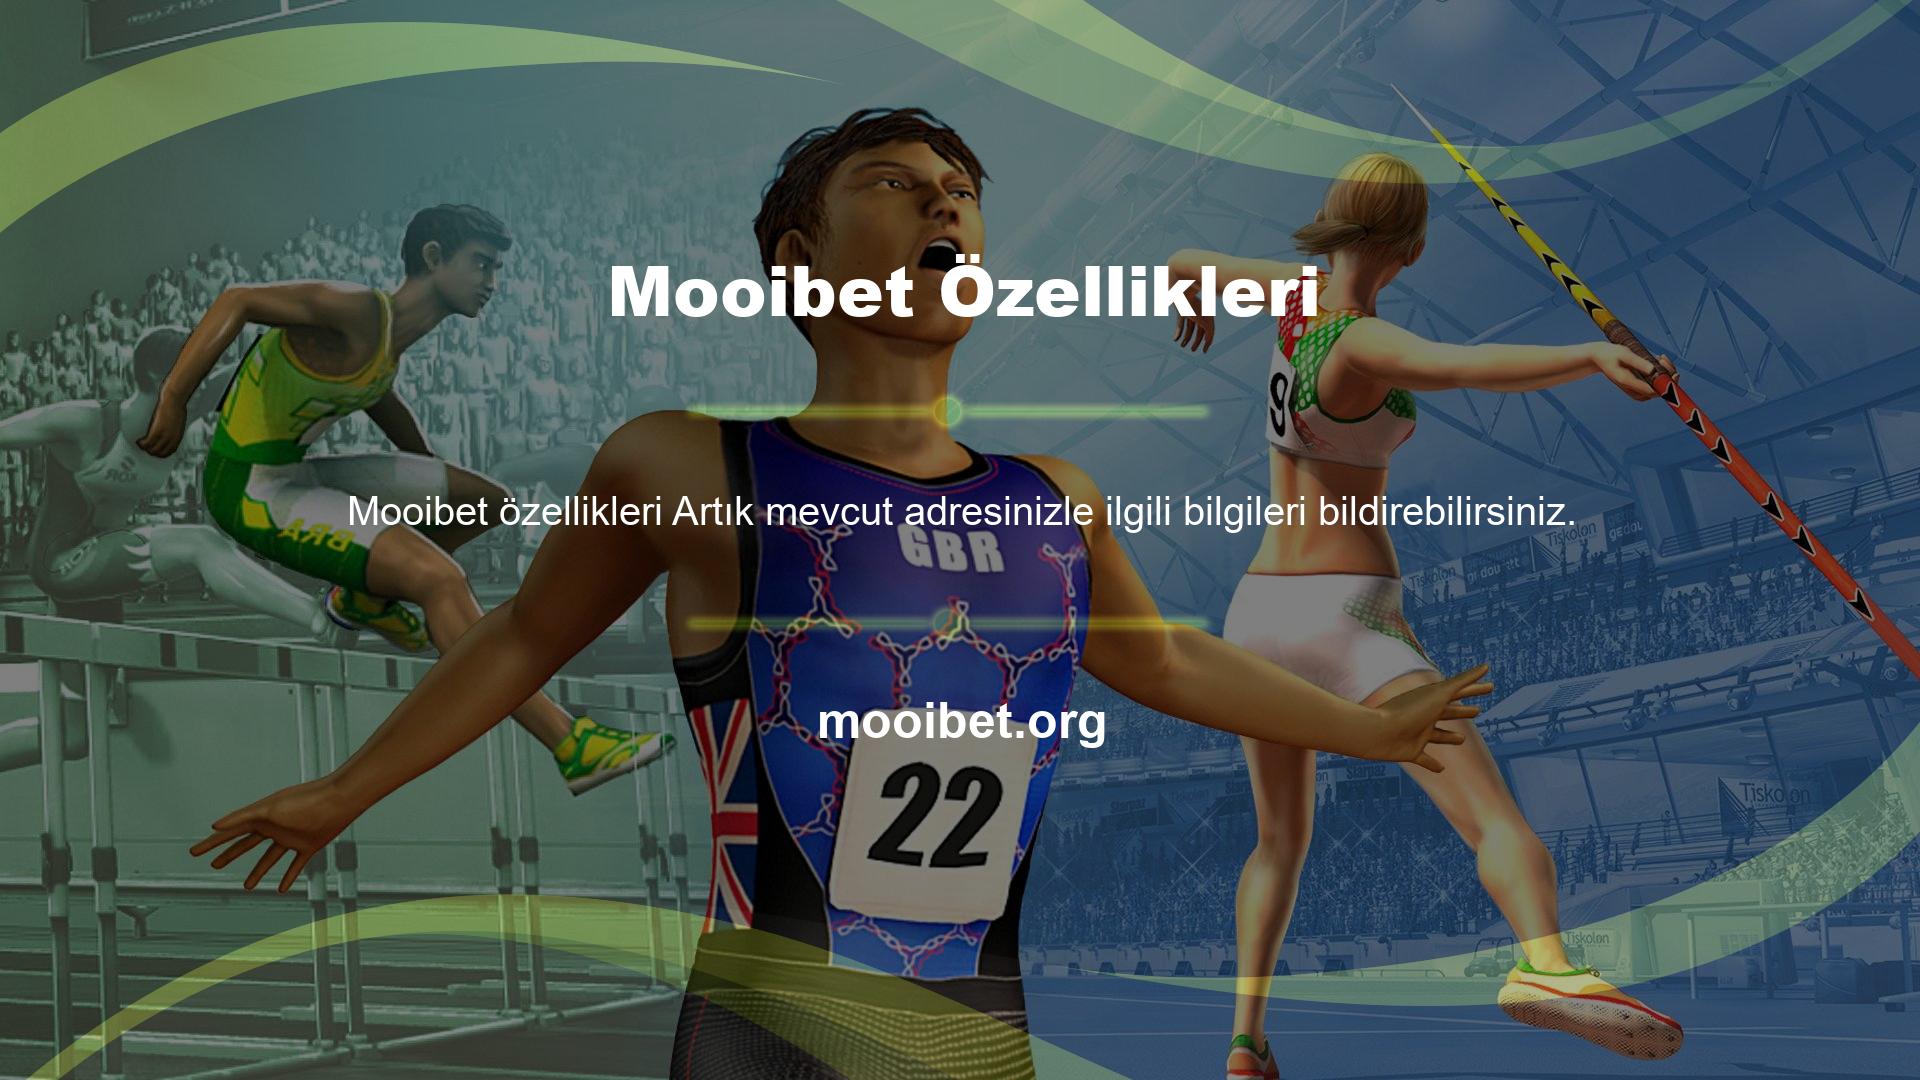 Mooibet web sitesi, özellikle sahte web siteleri olduğu için güncel adres önerilerine sahiptir